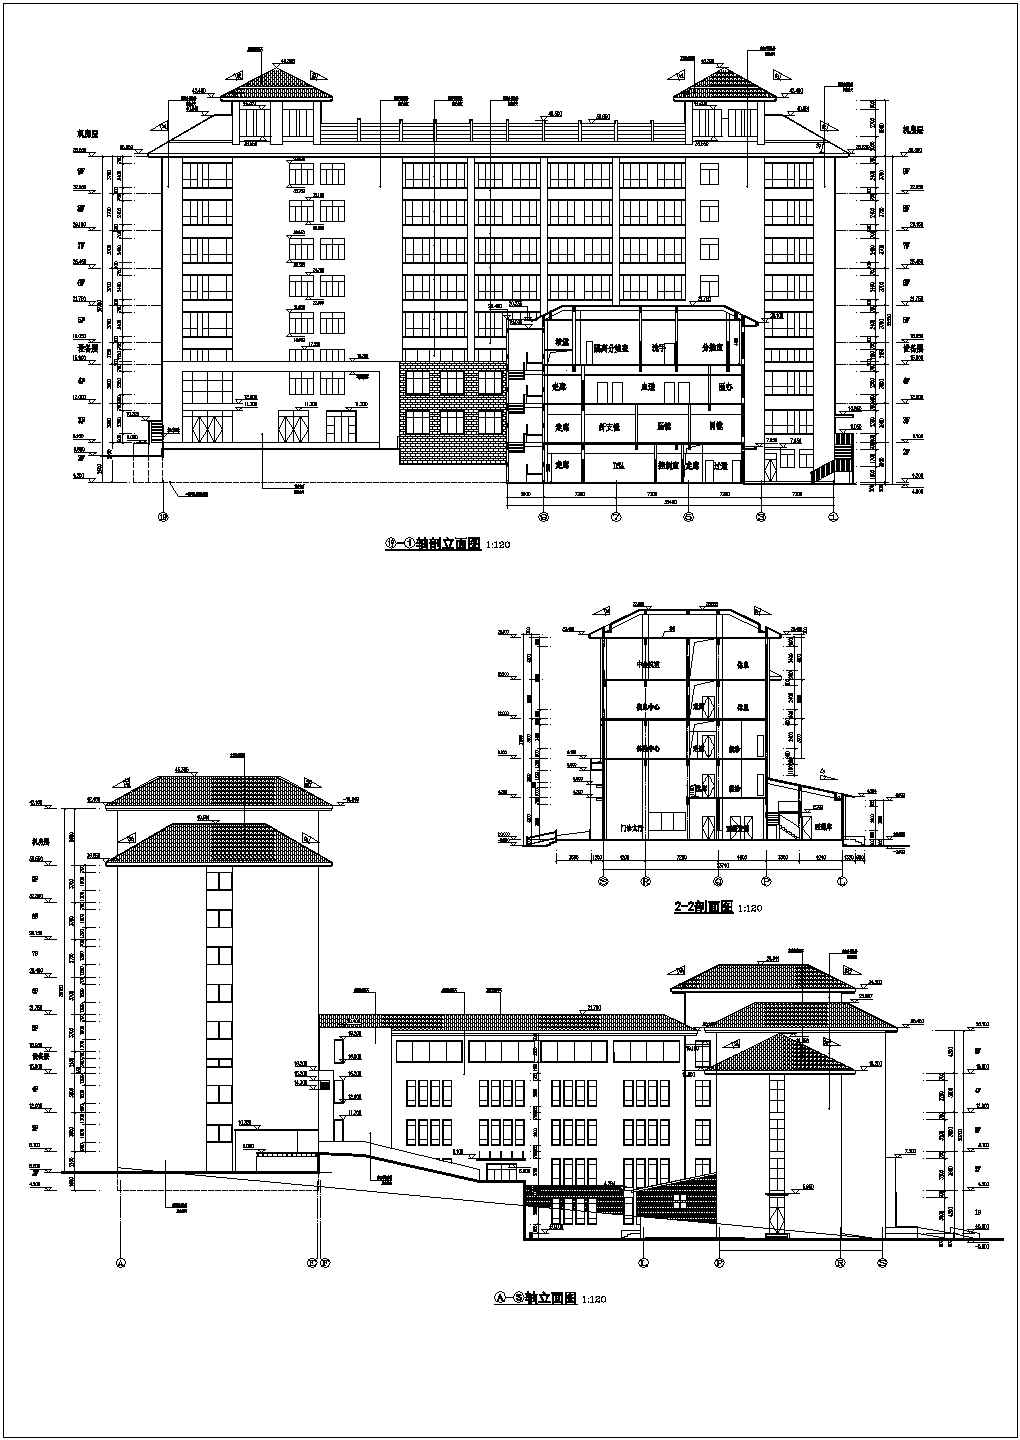 某县9层混凝土框架剪力墙结构医院综合楼建筑施工图纸